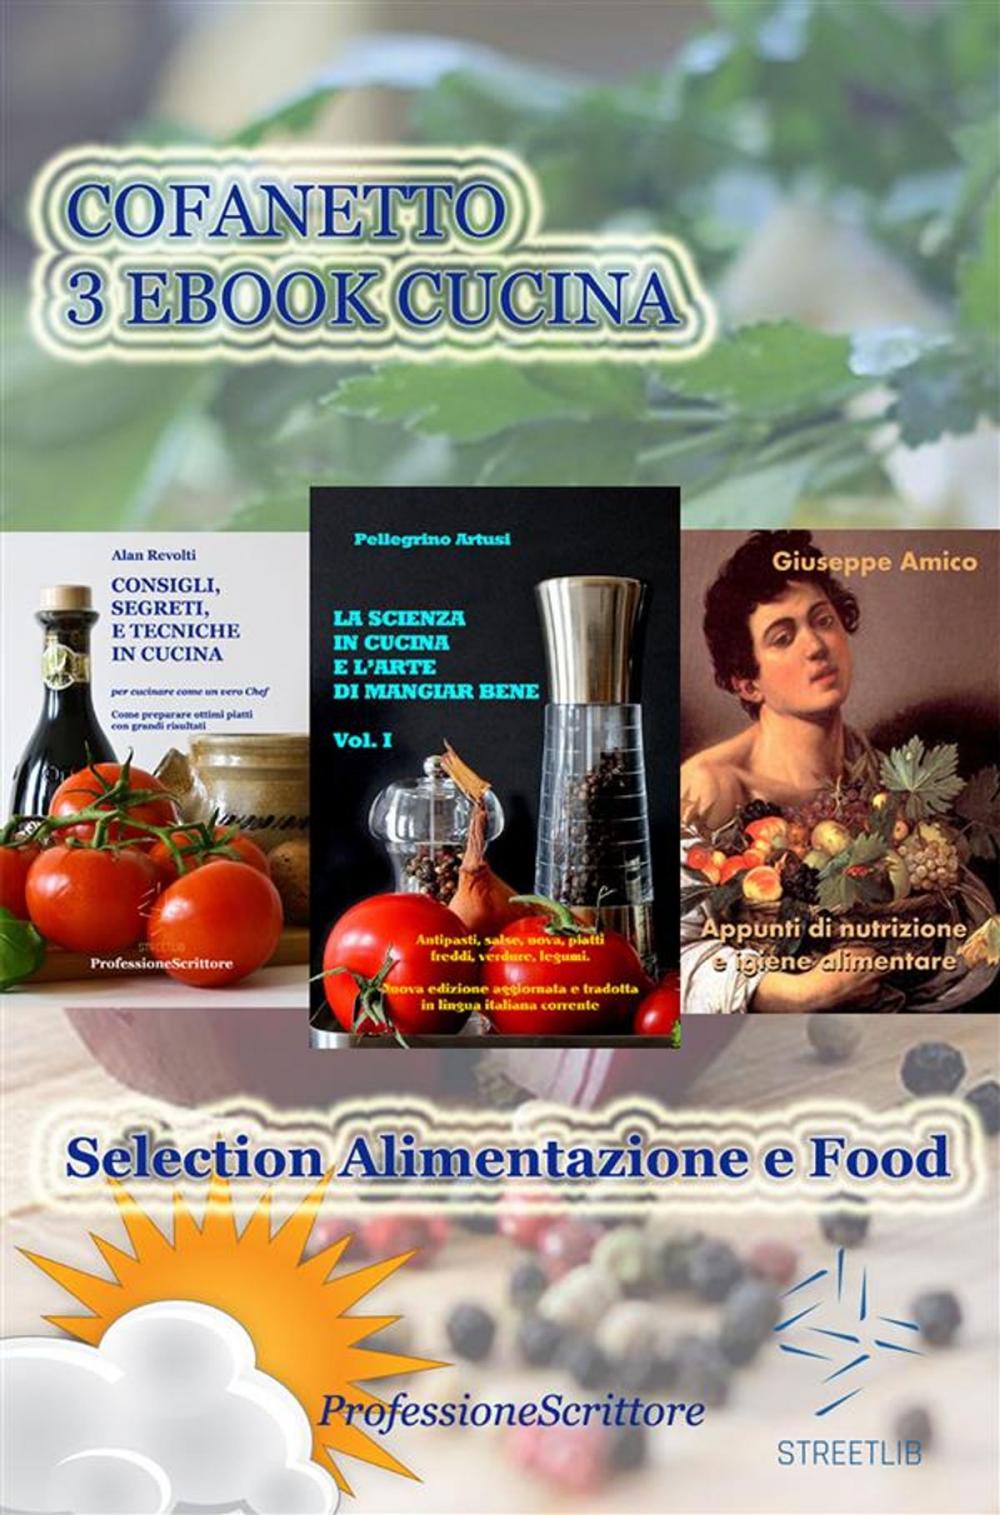 Big bigCover of Alimentazione e Food - Nutrizione, Trucchi e Segreti in cucina, Ricette, Consigli (Cofanetto 3 Ebook Cucina)